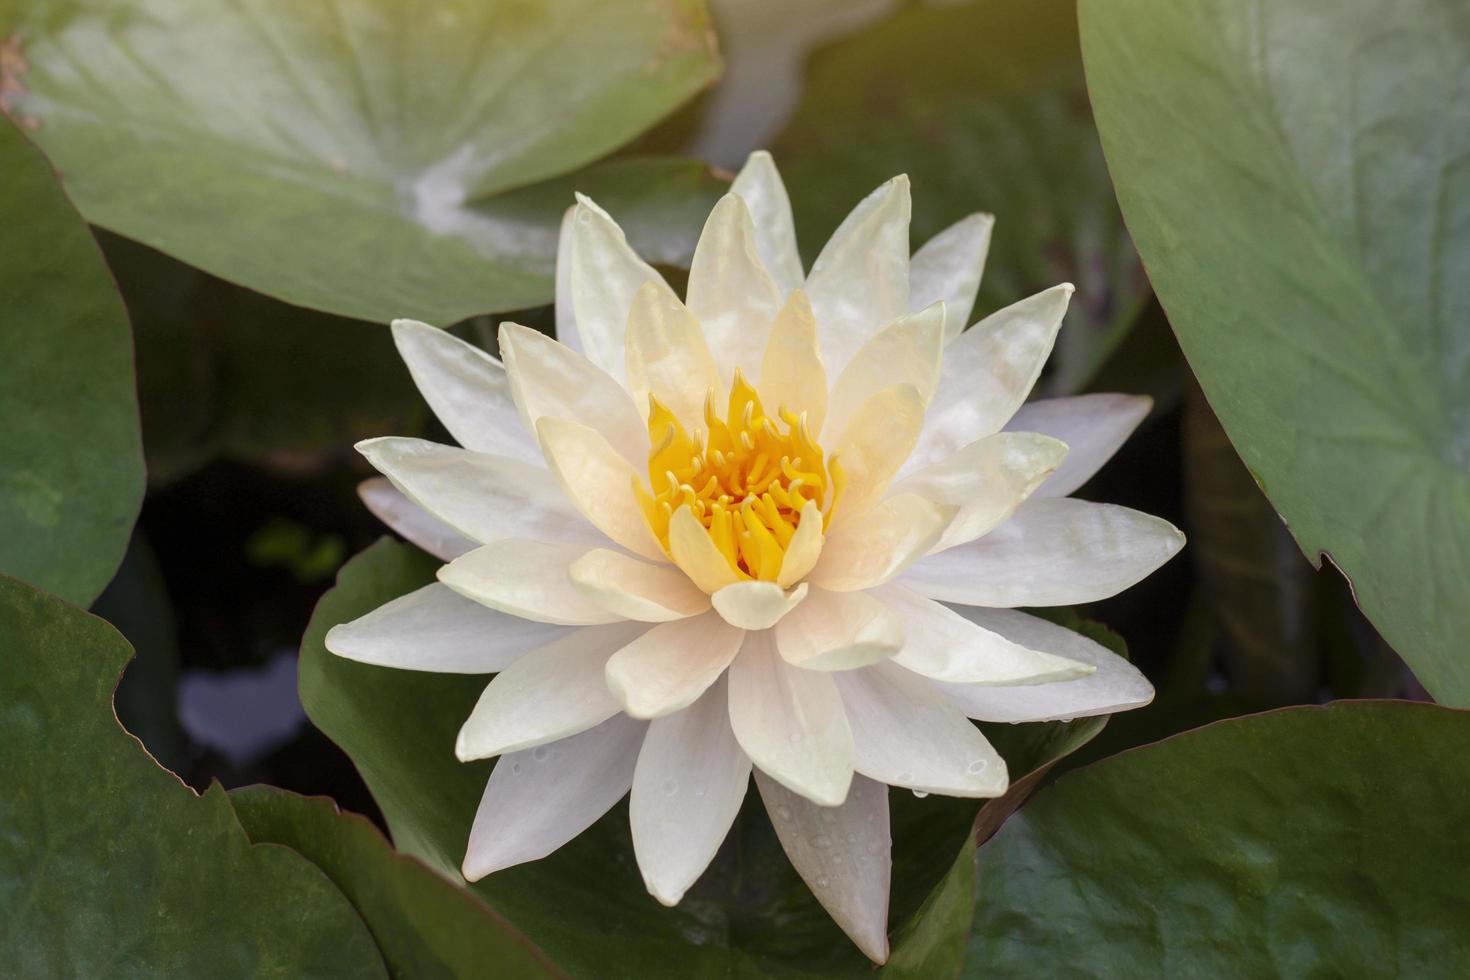 skön gul lotus eller vatten lilja blomma blomma i damm med solljus. foto